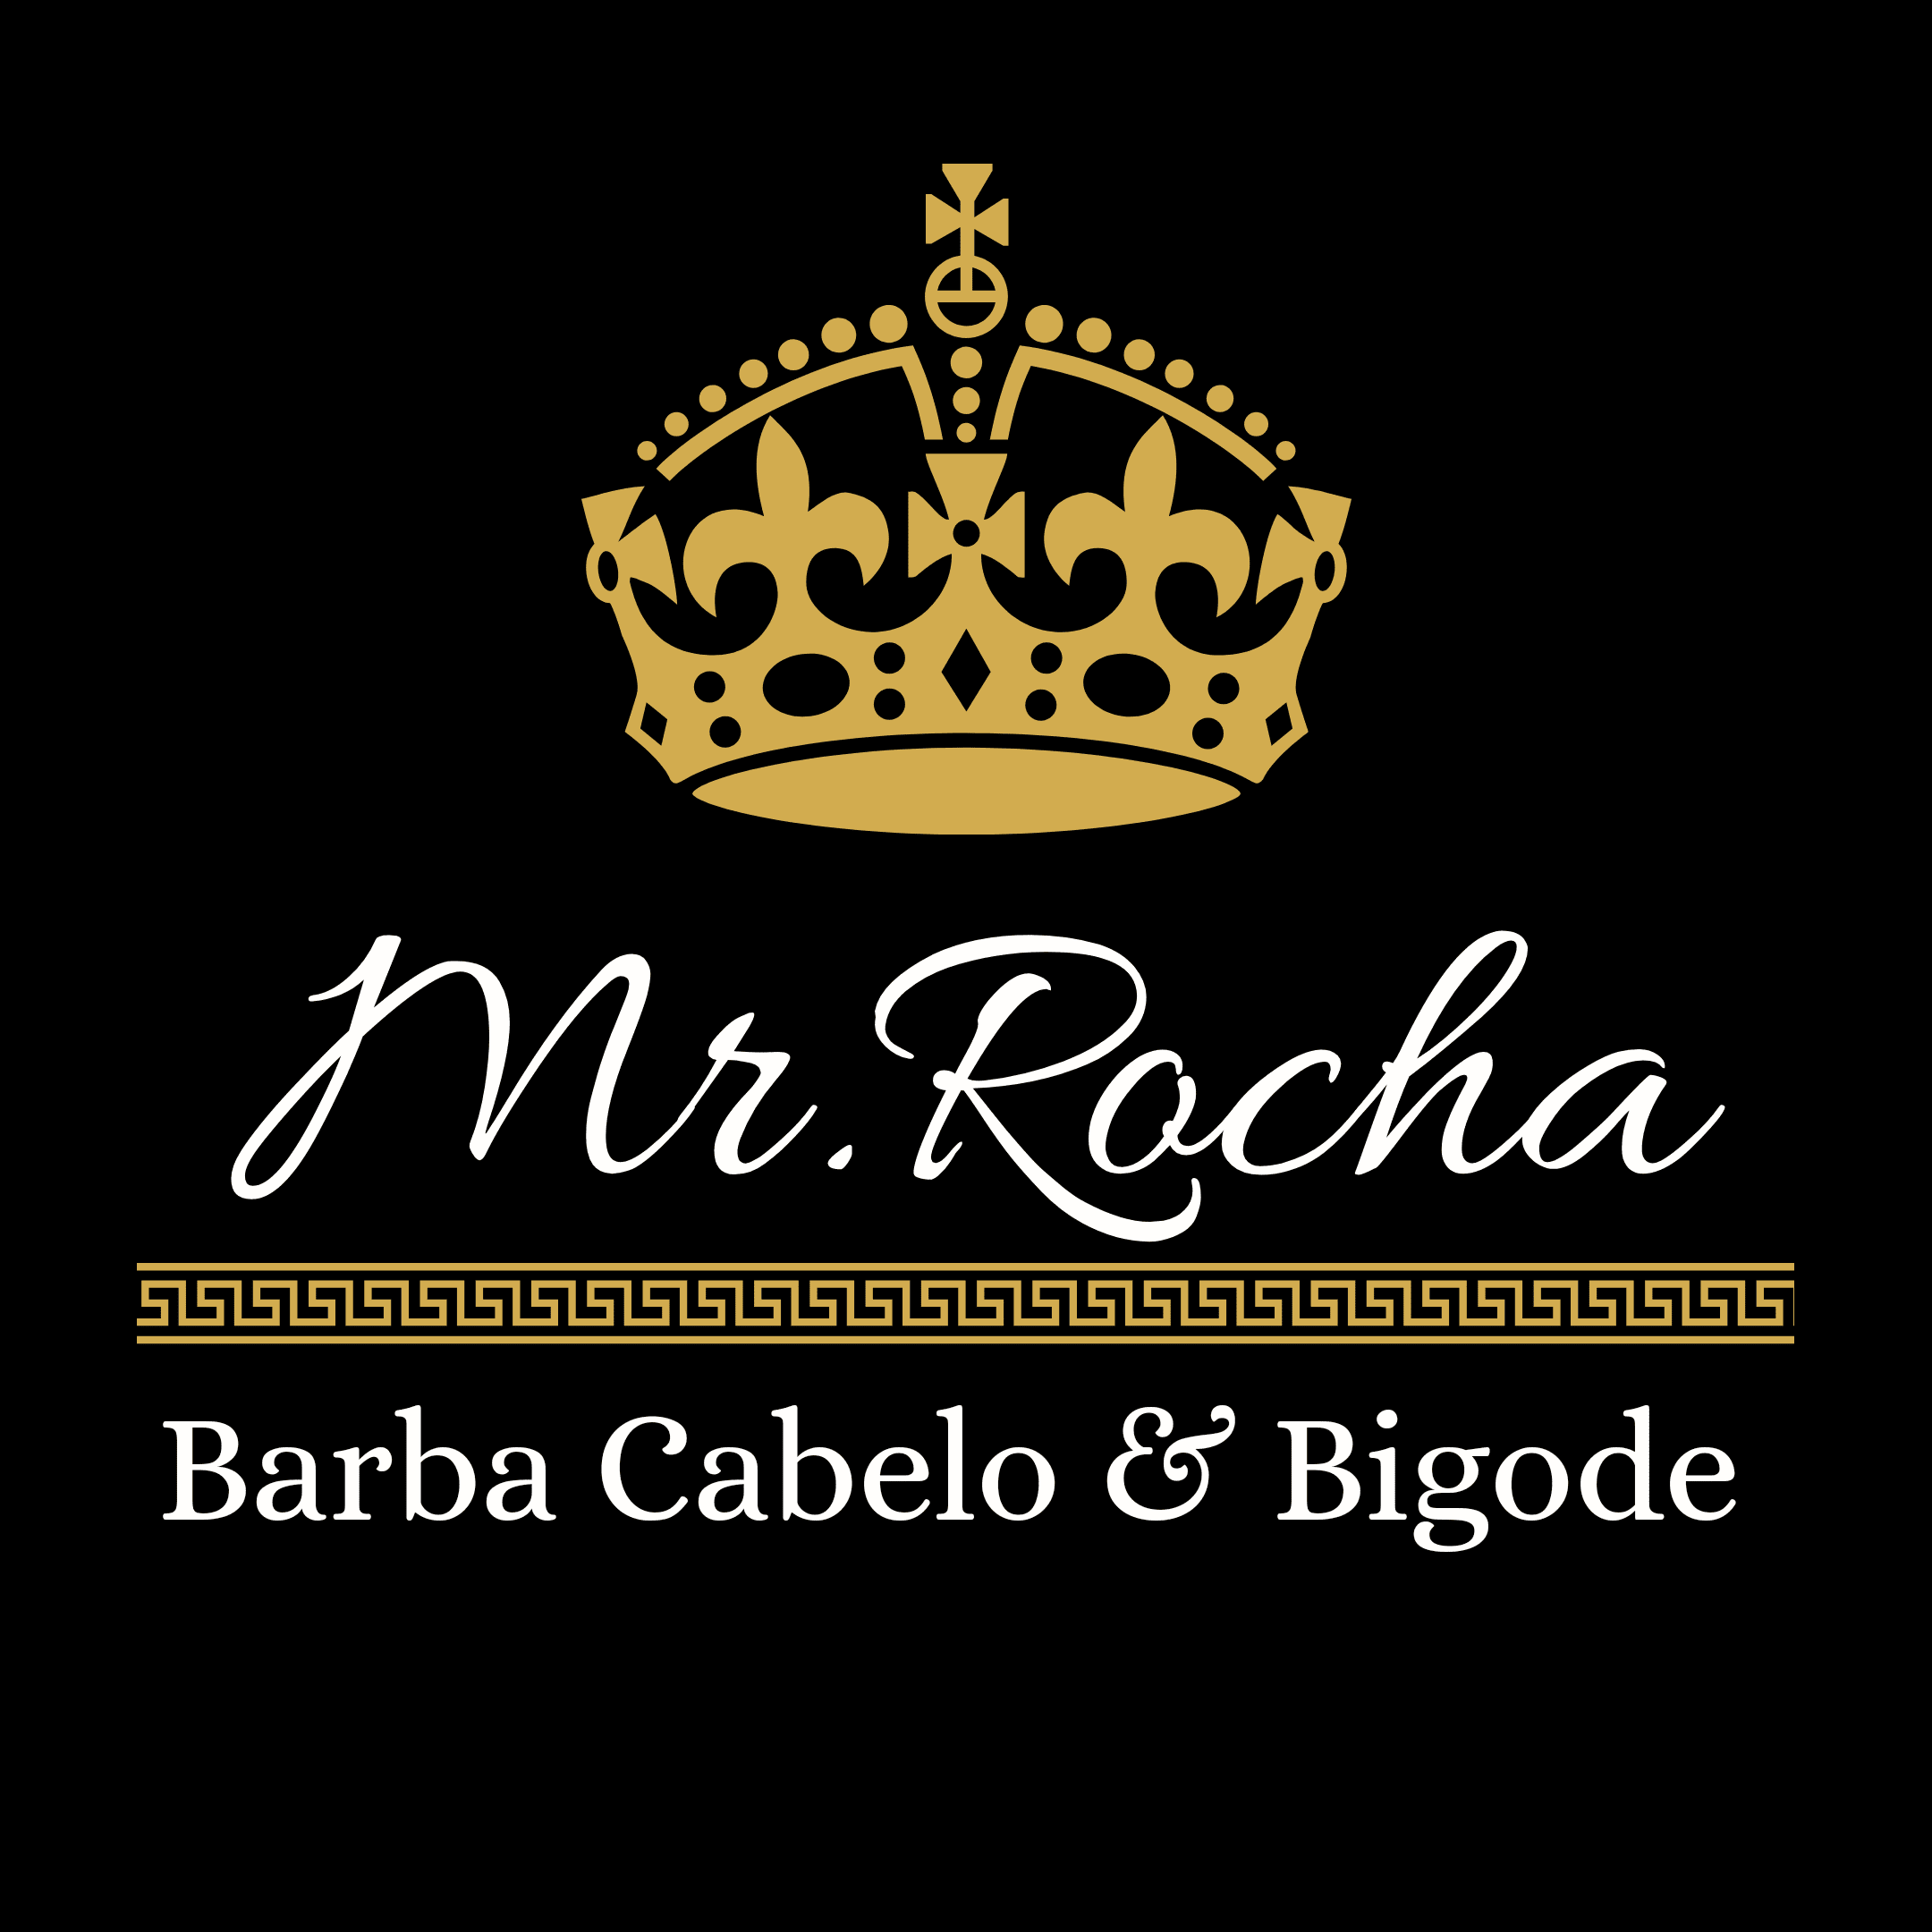 Mr. Rocha Barbearia